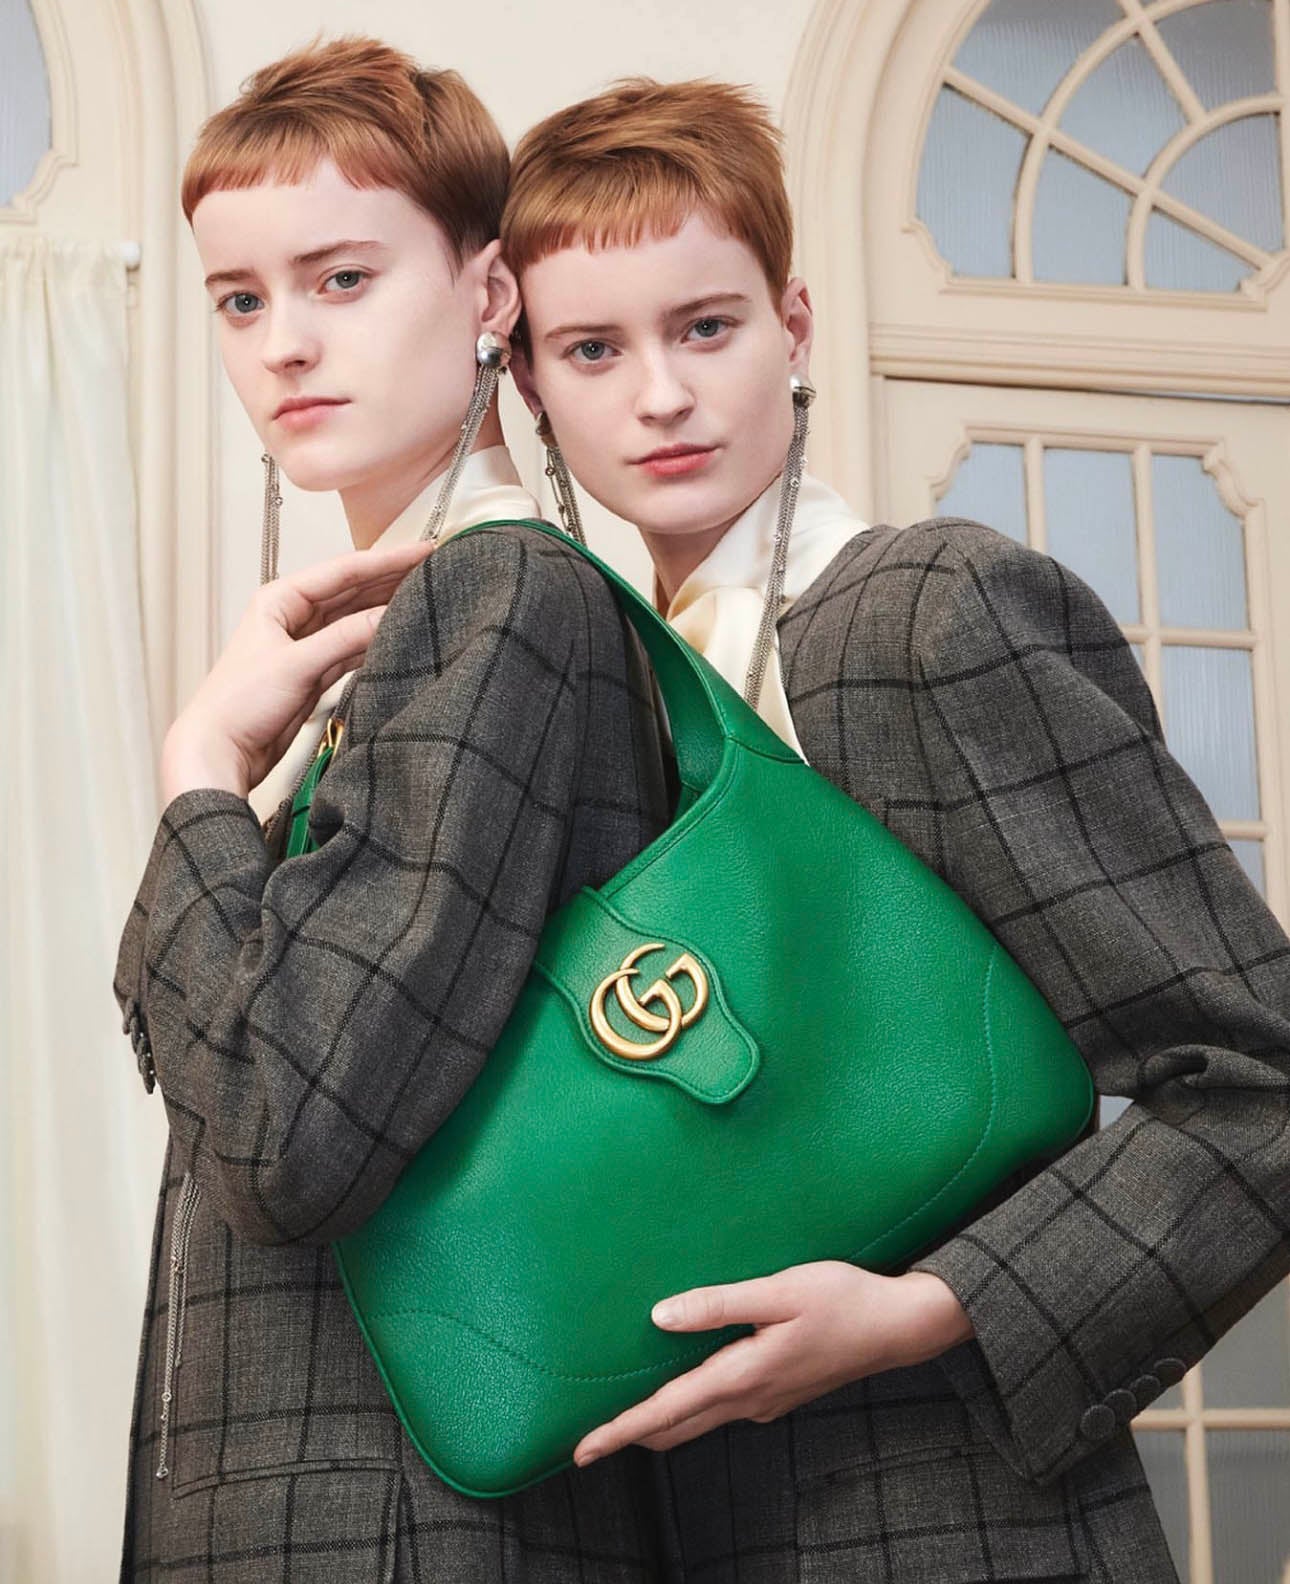 Gucci Aphrodite medium shoulder bag - Green